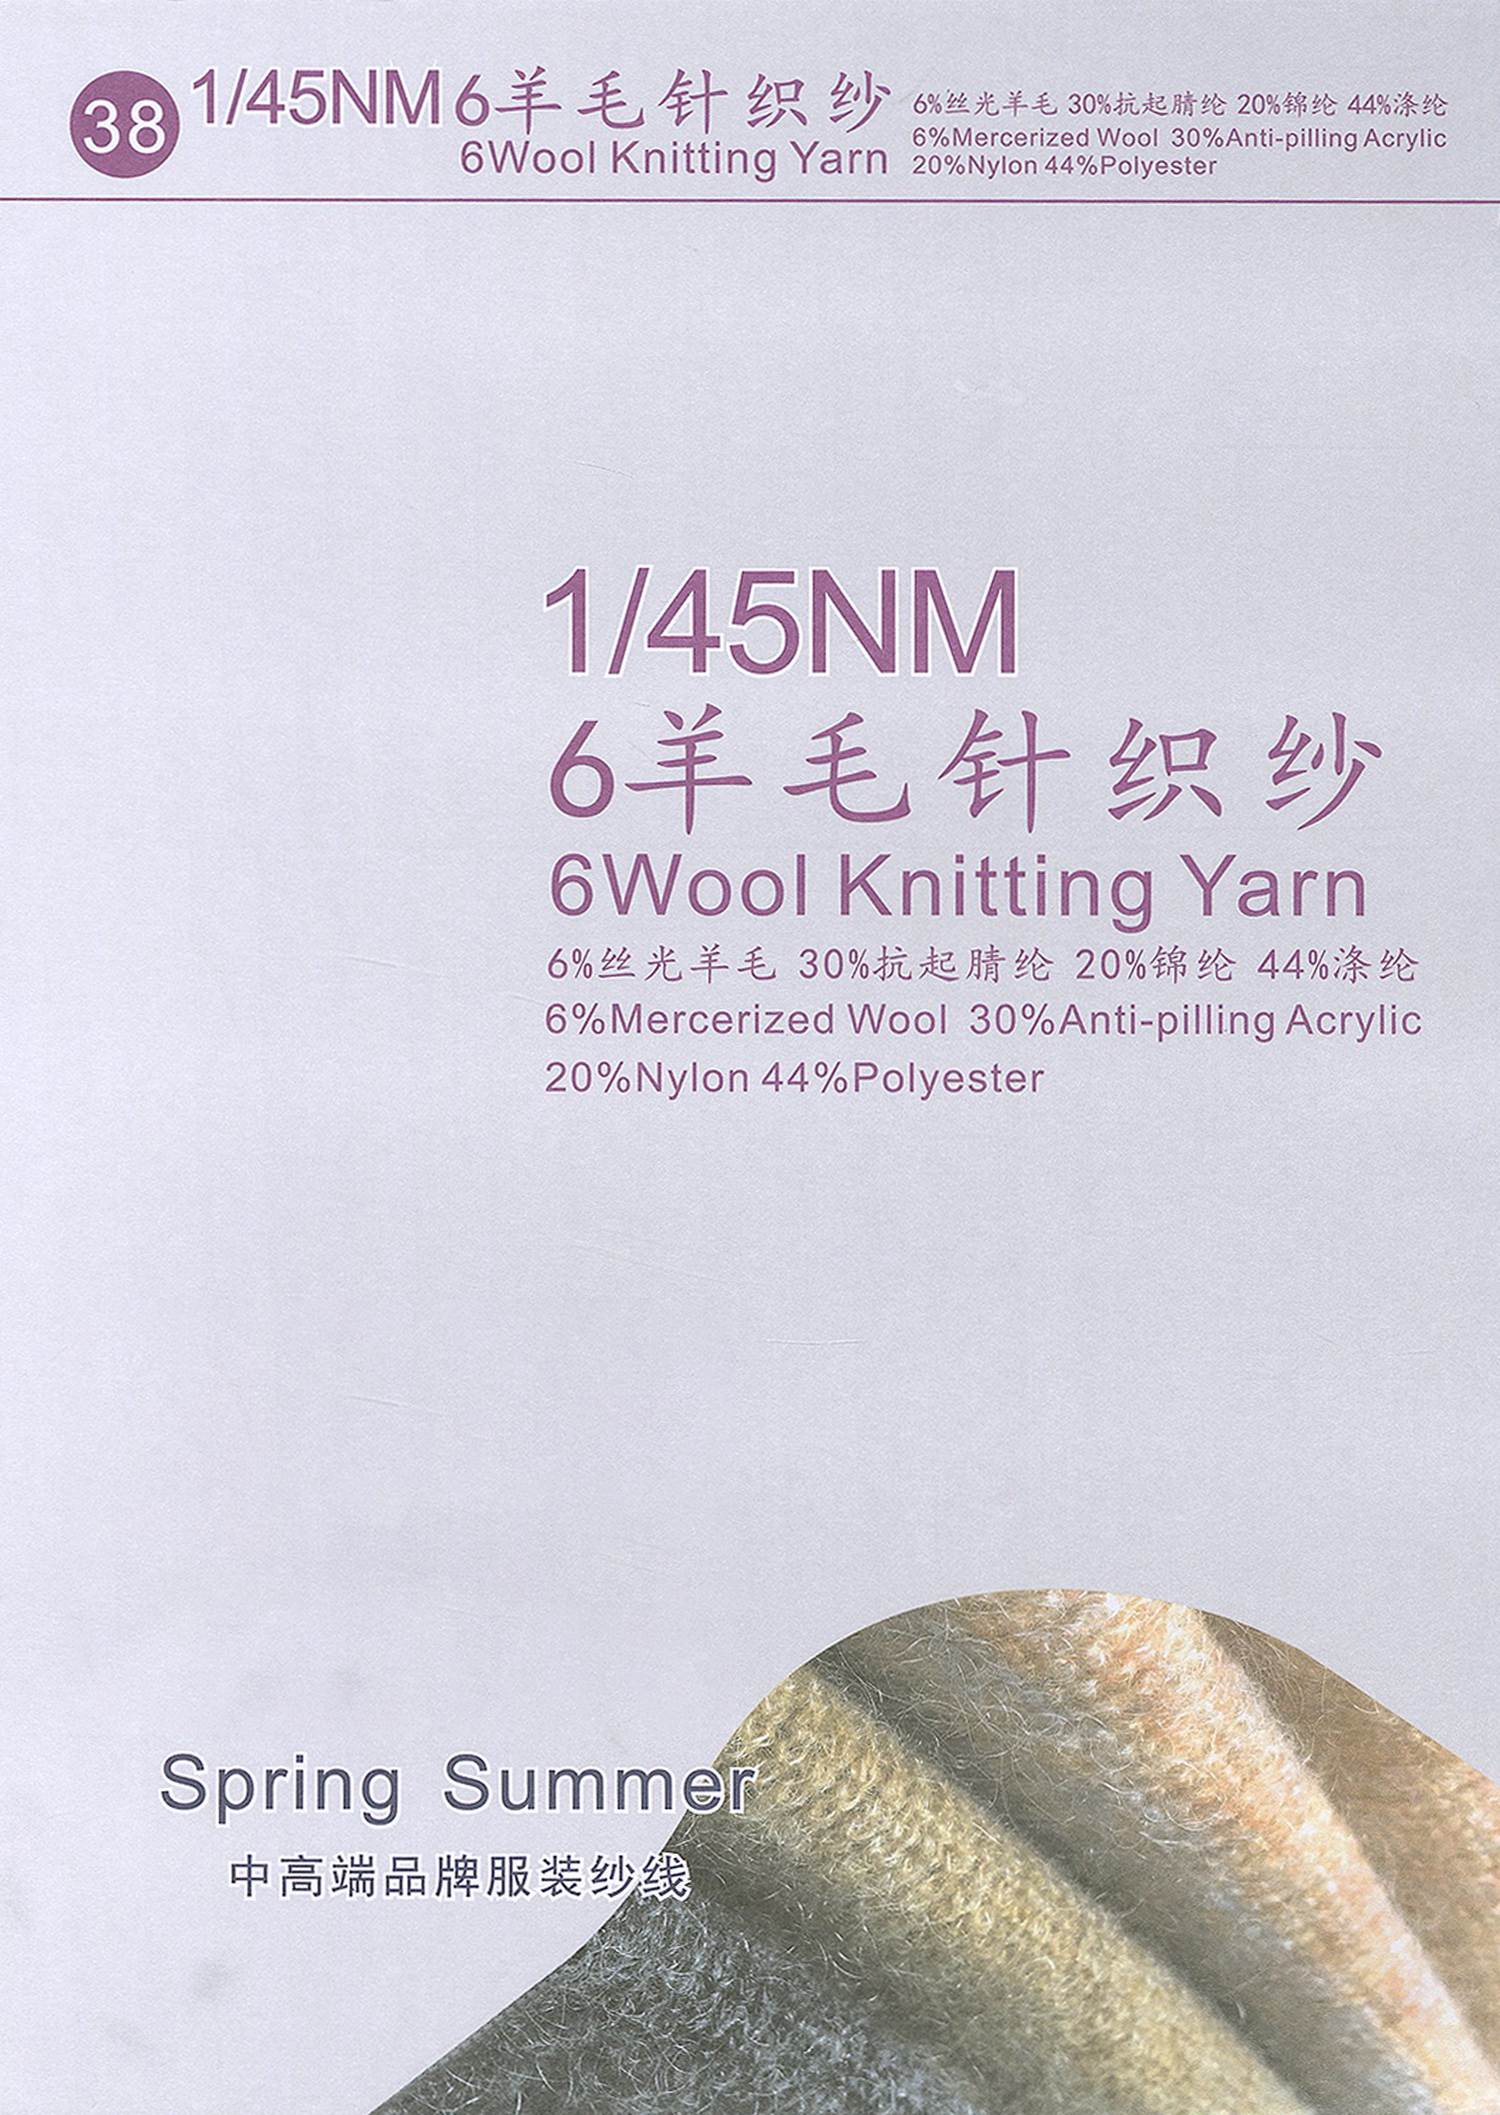 38)6羊毛针织纱